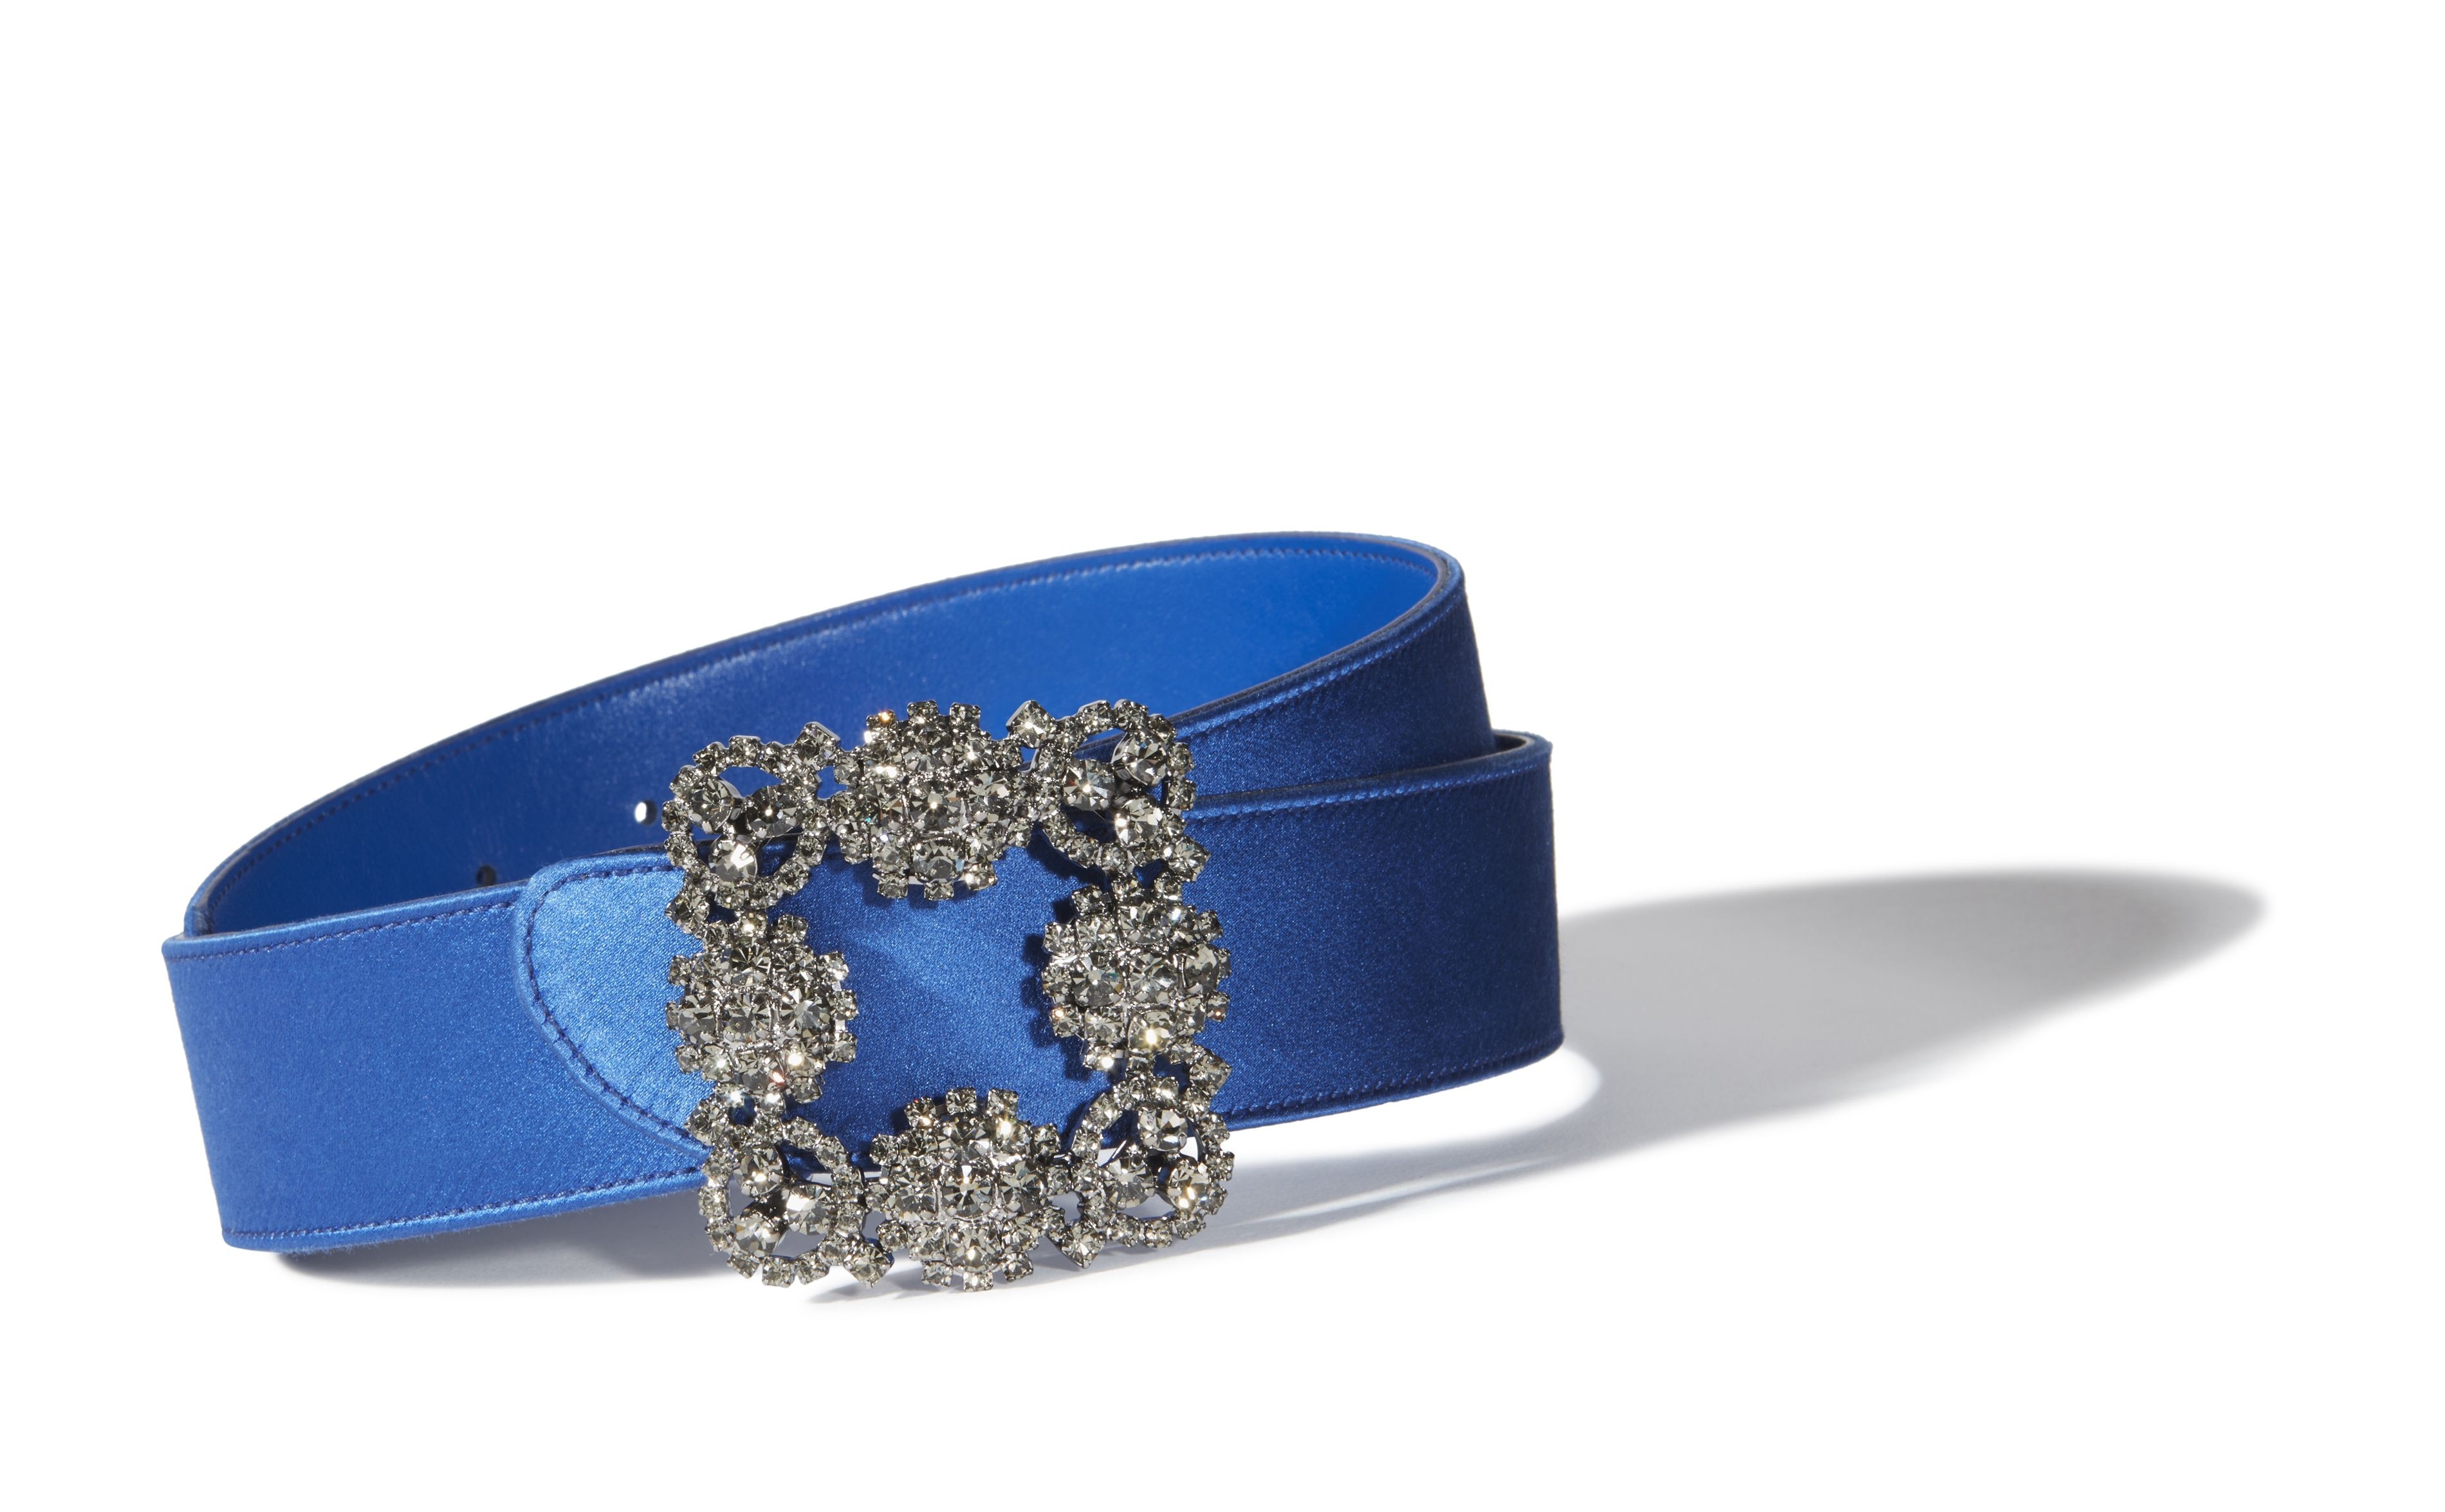 Blue Satin Crystal Buckled Belt - 2